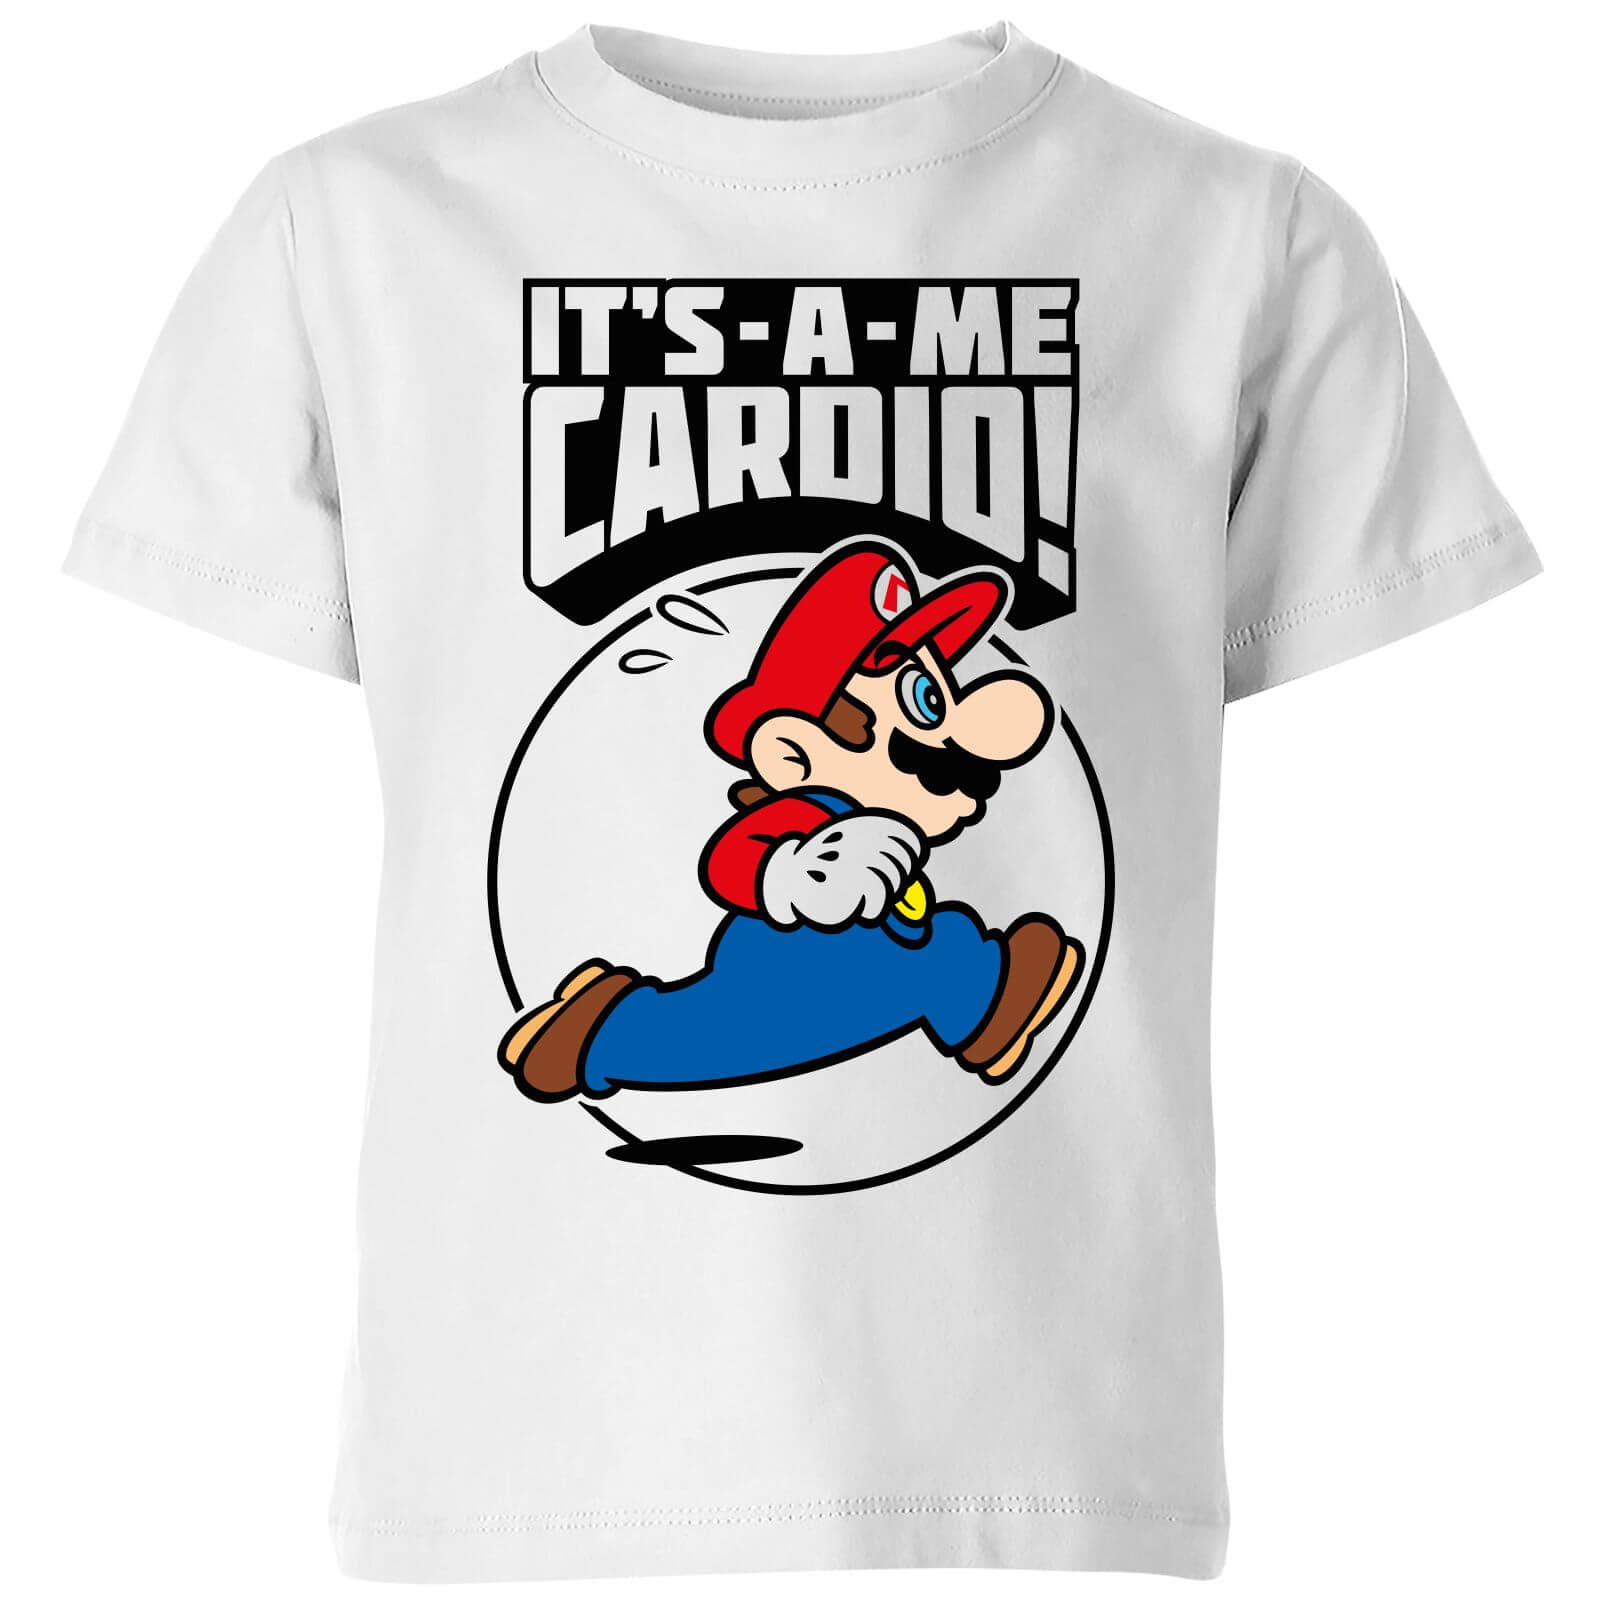 Nintendo Super Mario Cardio Kid's T-Shirt - White - 7-8 Years - White